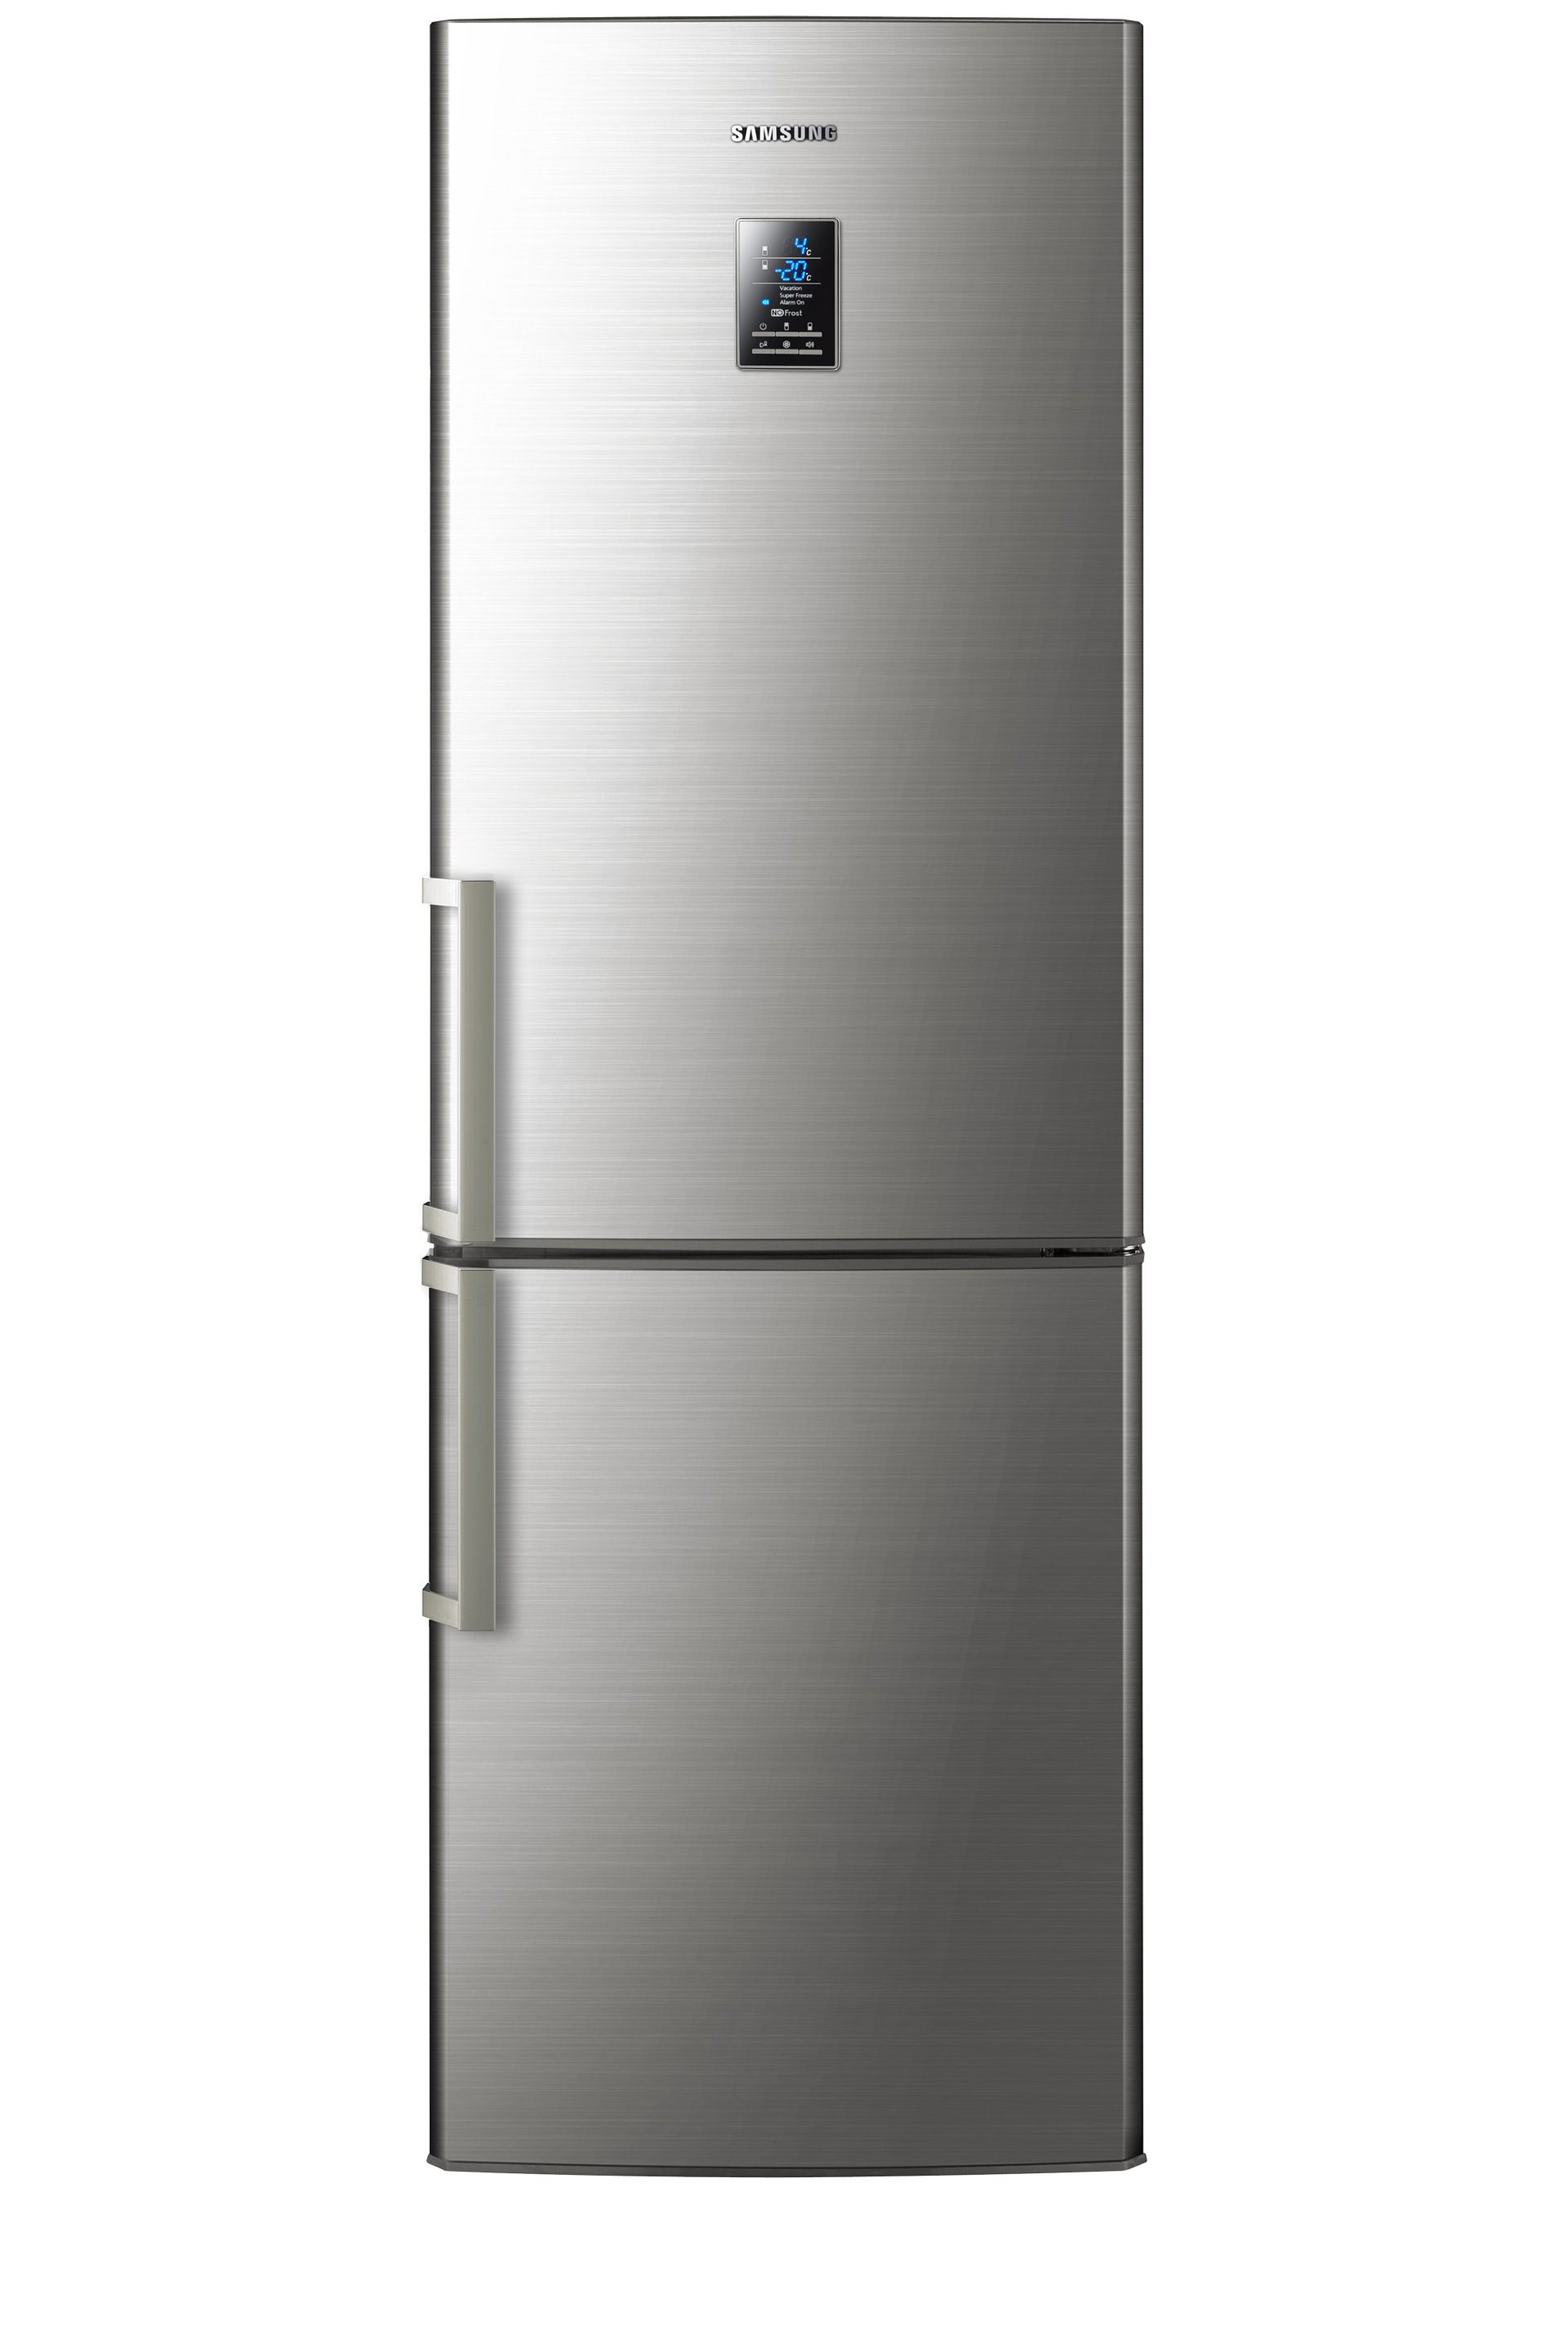 Почему нагреваются боковые стенки у холодильника